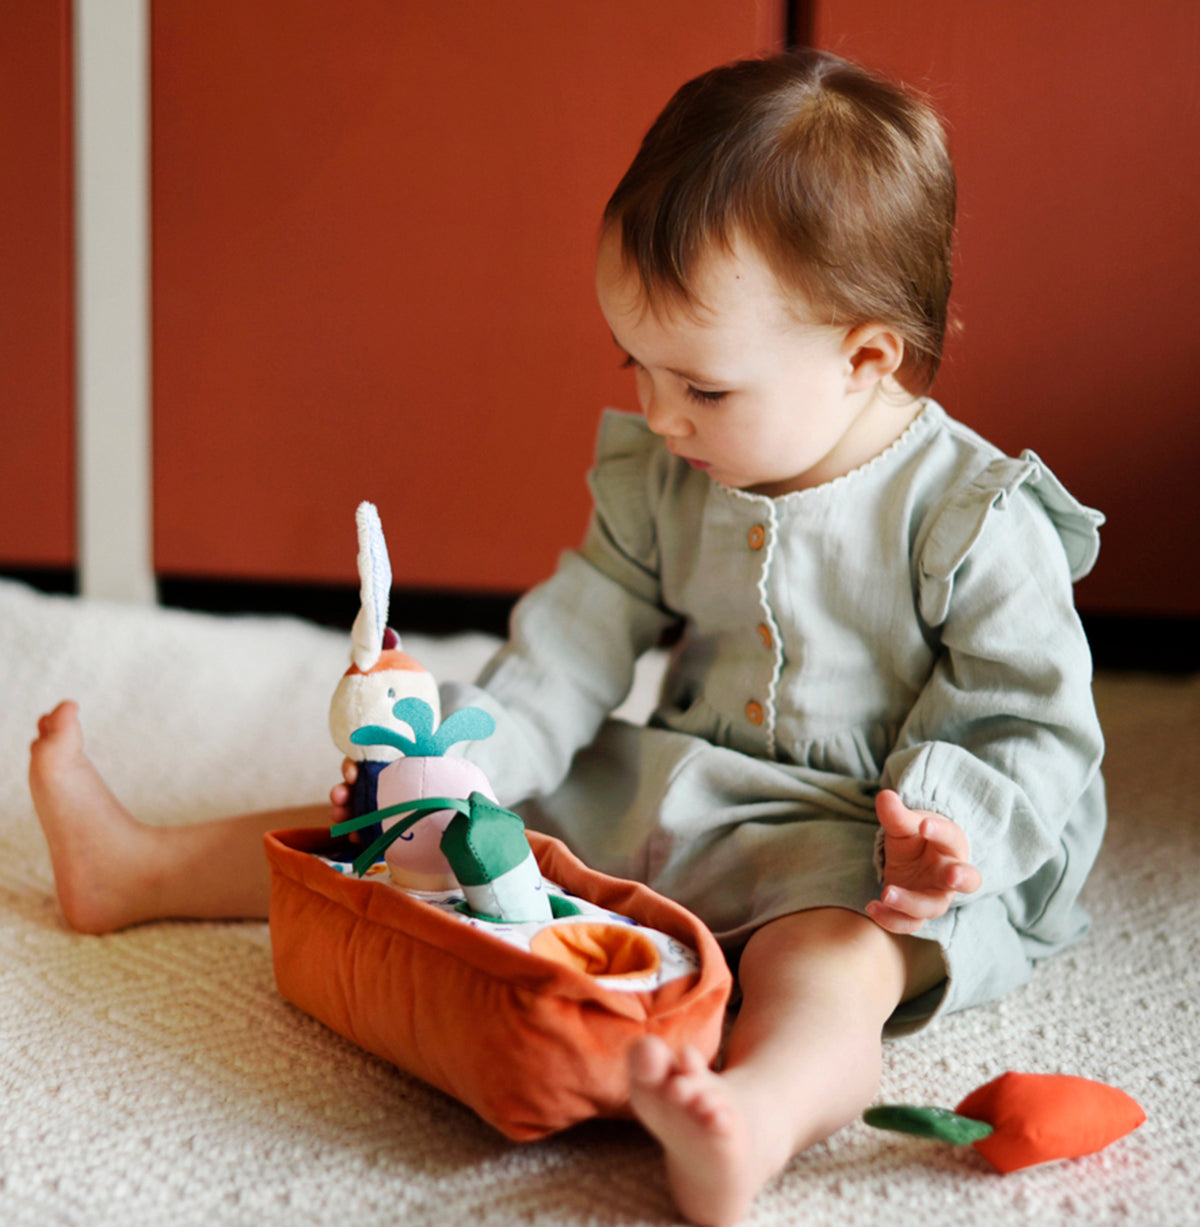 Jouet en tissu permettant à bébé d'encastrer les objets, dès l'âge de 6 mois. Encourage et accompagne le développement de la motricité fine et des capacités de coordination et de logique.